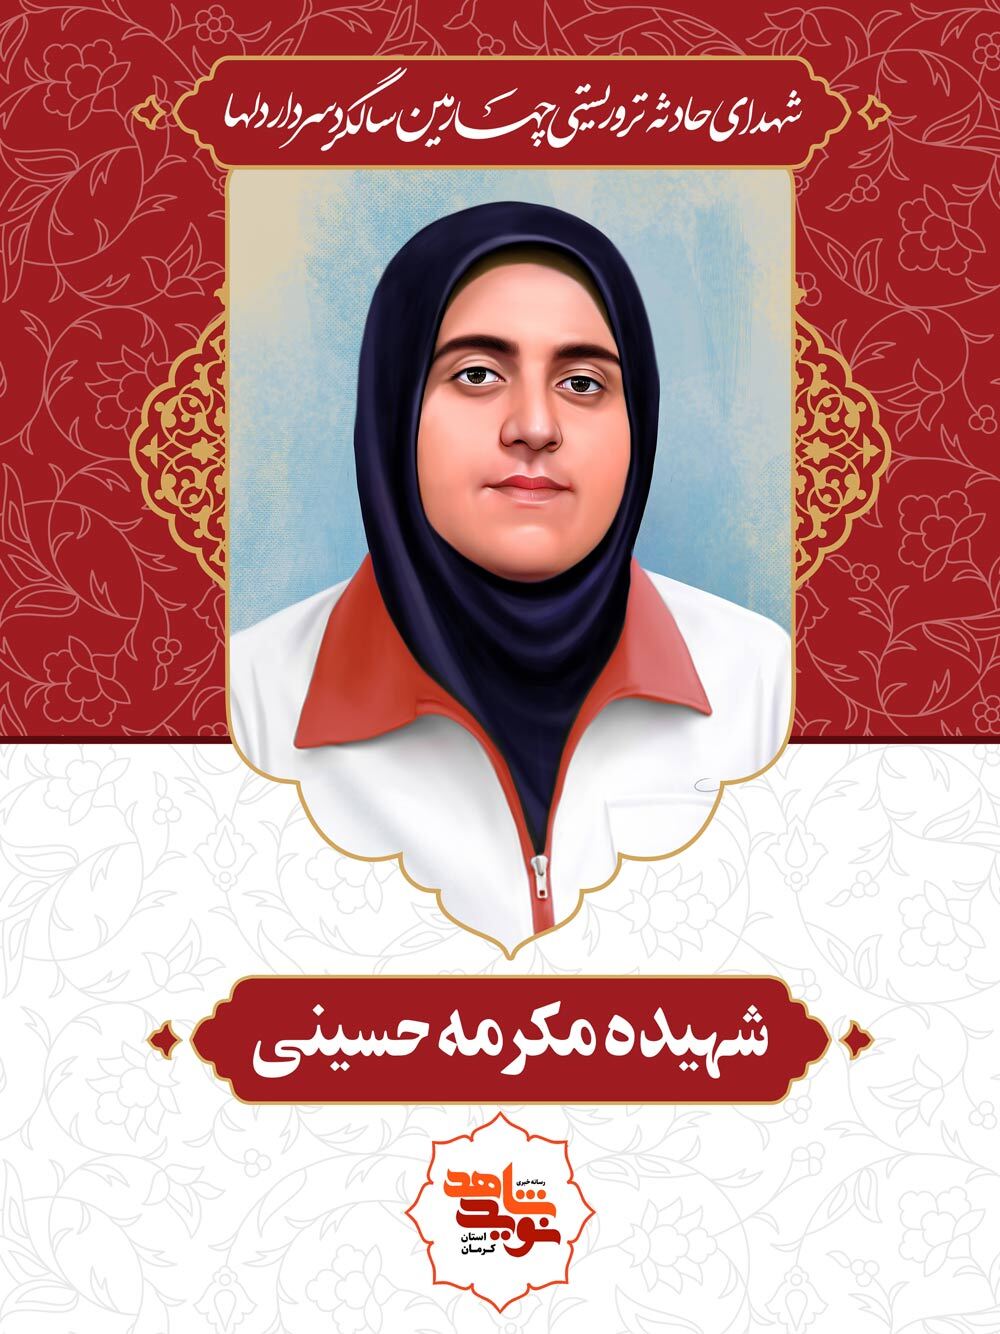 کتابخانه دانشگاه پیام نور کرمان به نام دانشجوی شهید حادثه تروریستی گلزار شهدا نام‌گذاری شد